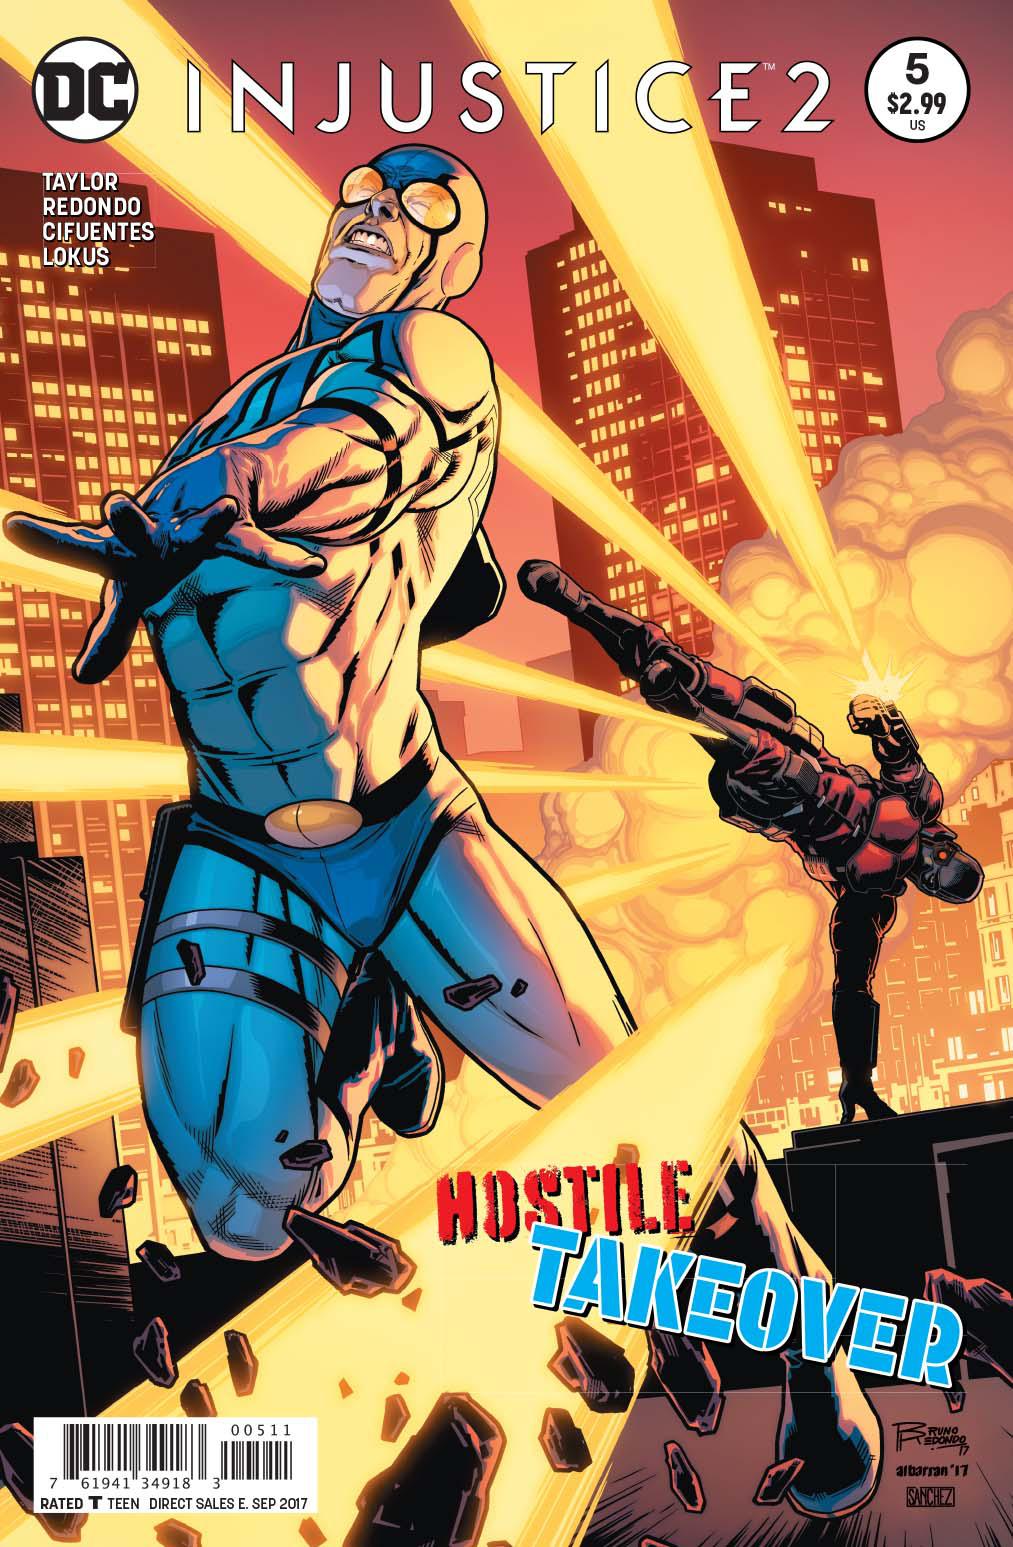 Injustice 2 Vol. 1 #5